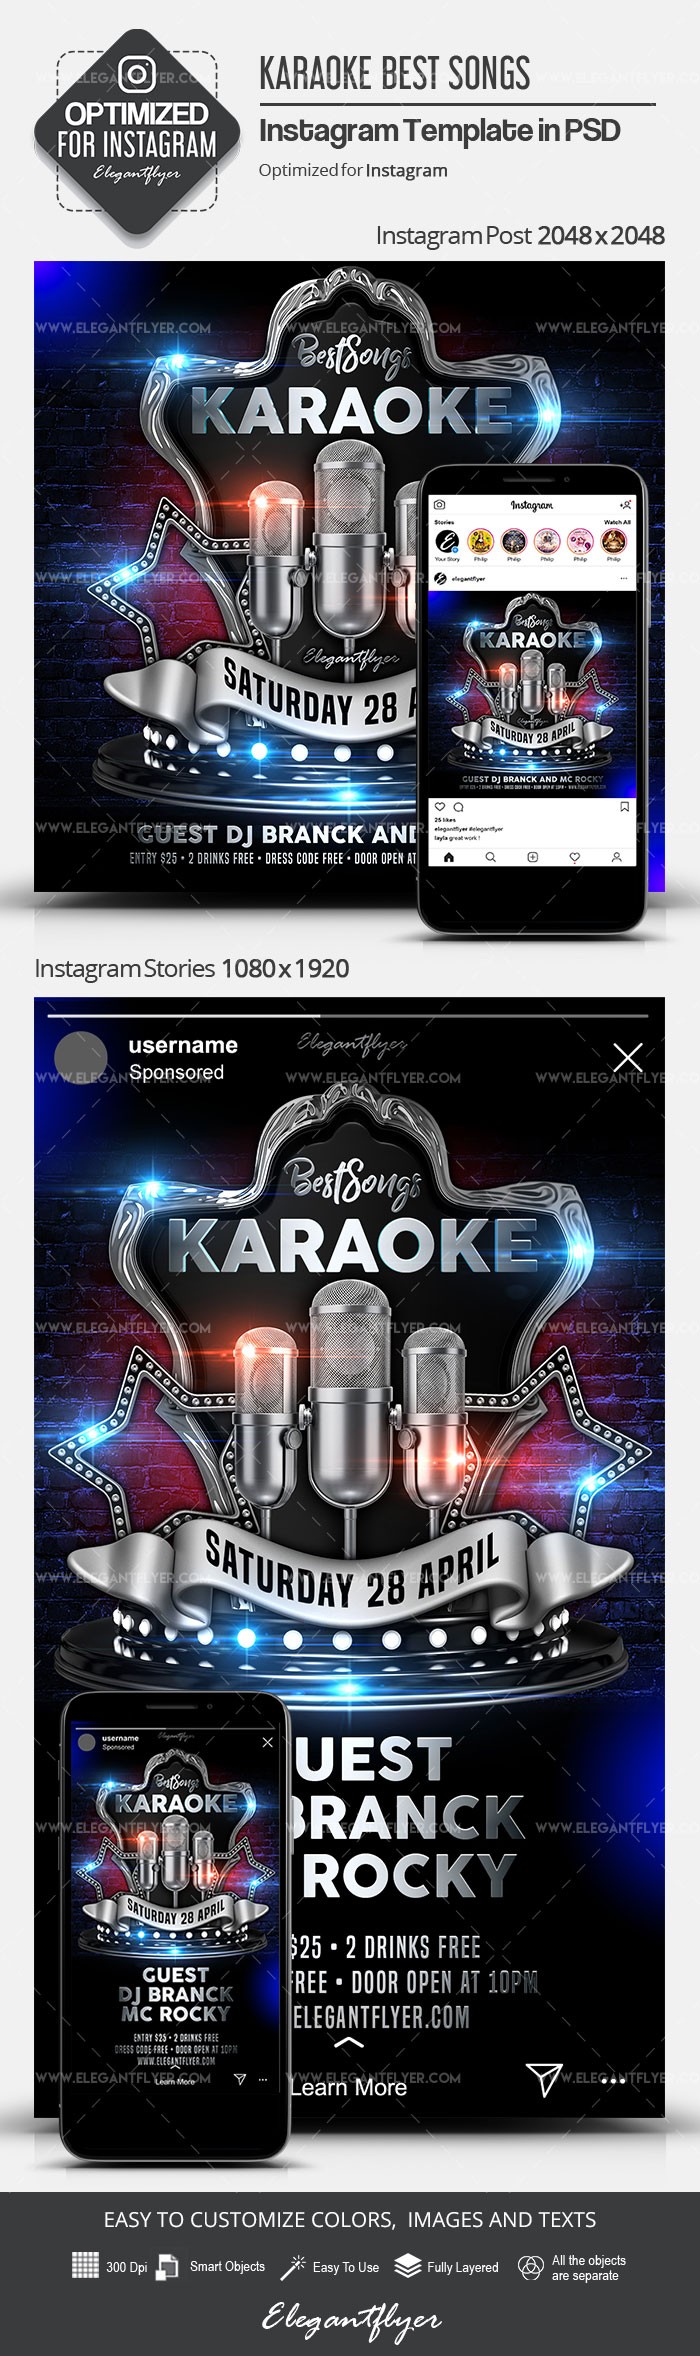 Karaoke Best Songs Instagram by ElegantFlyer